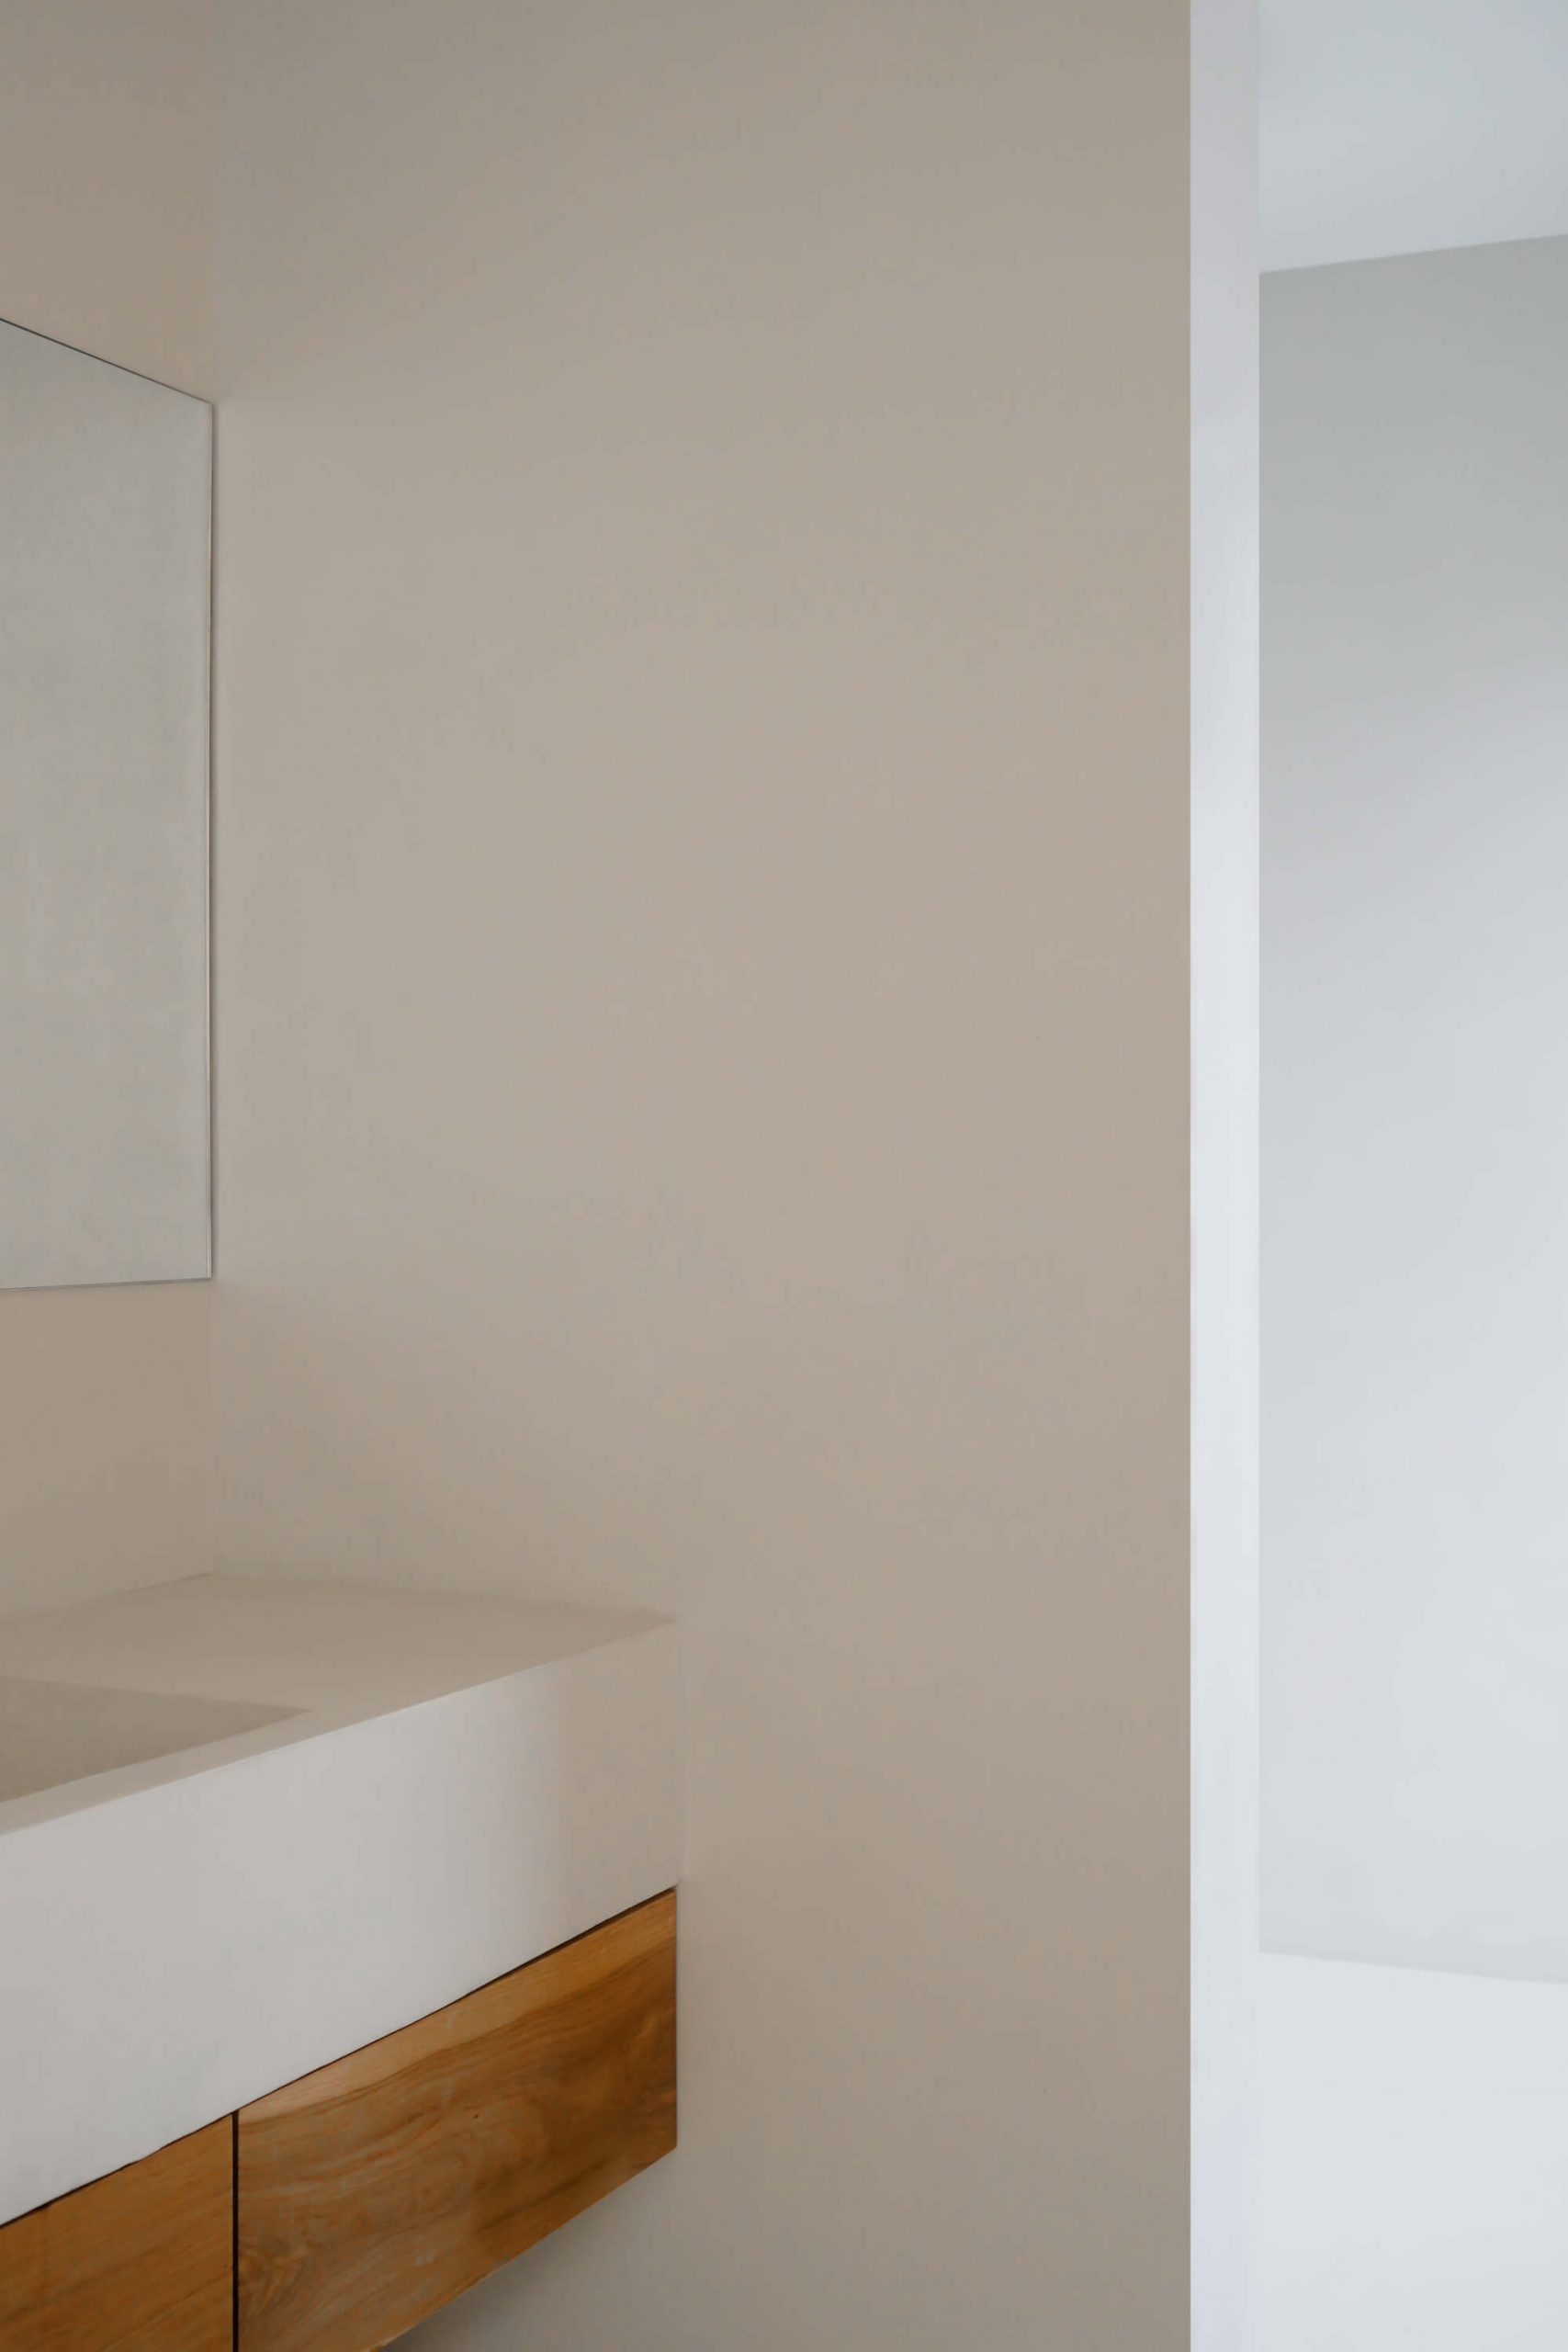 CasaE - Marina Senabre, banheiro minimalista com bancada branca e armários marrom.